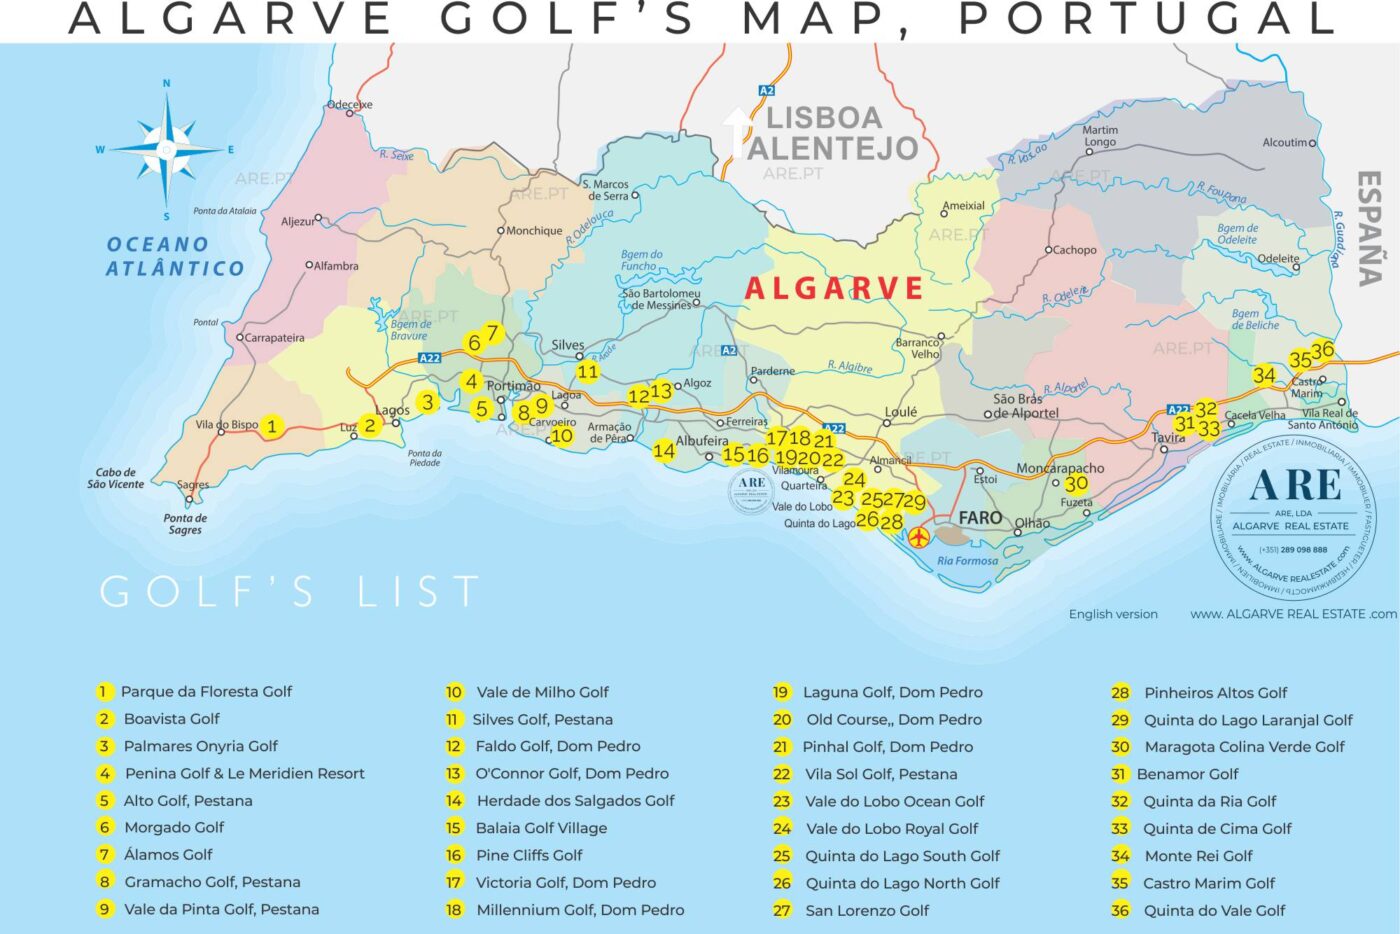 Carte de l'Algarve indiquant 36 terrains de golf répartis dans les 16 communes.